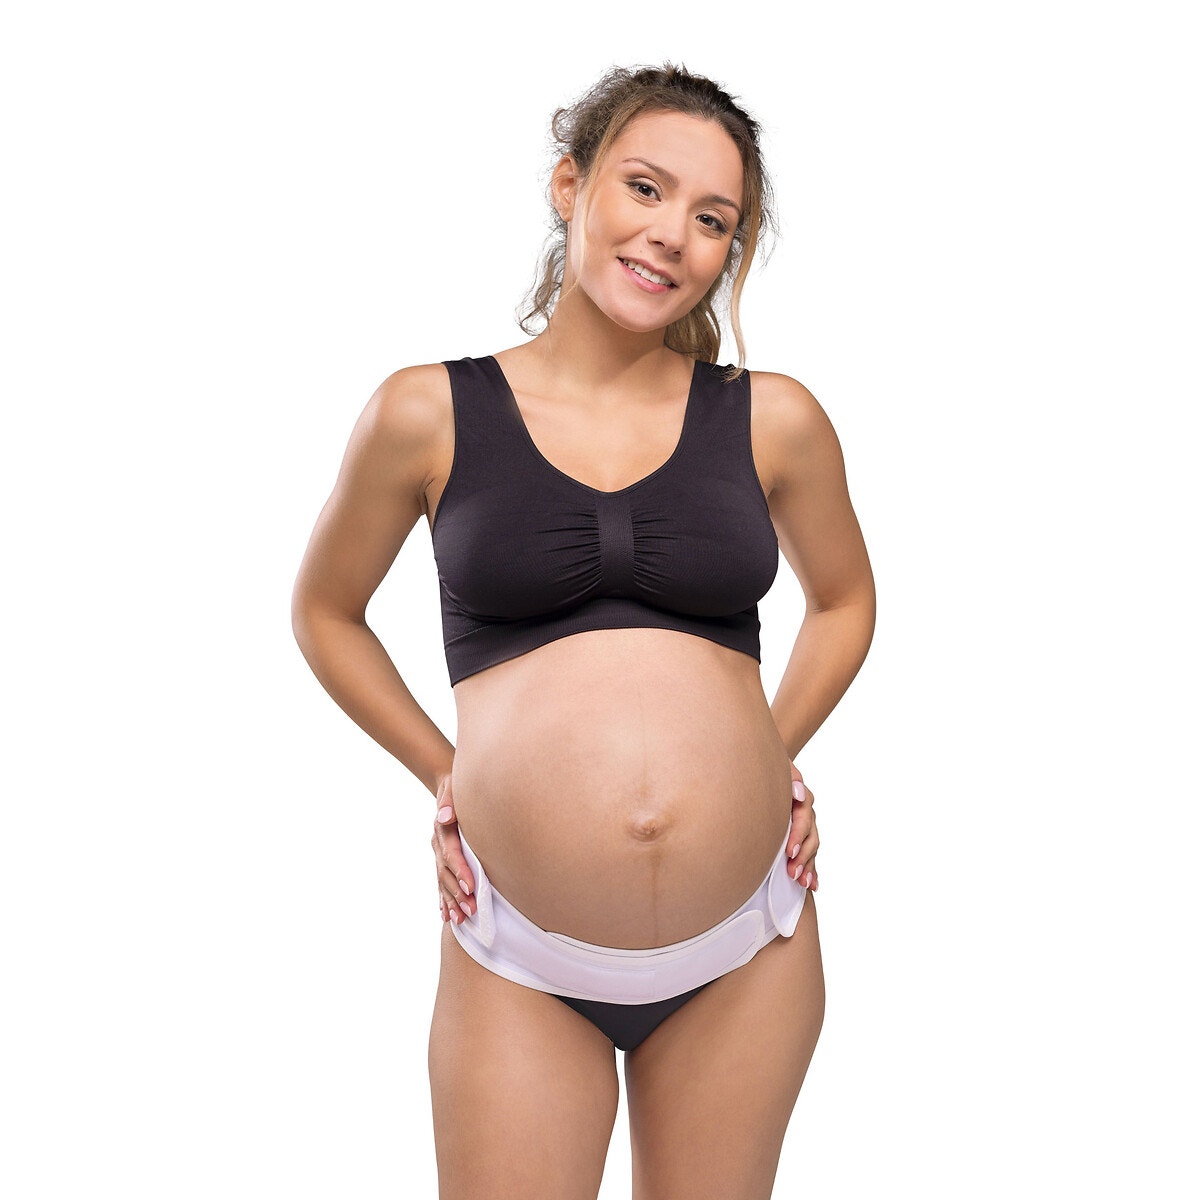 Ρυθμιζόμενη ζώνη υποστήριξης για την εγκυμοσύνη